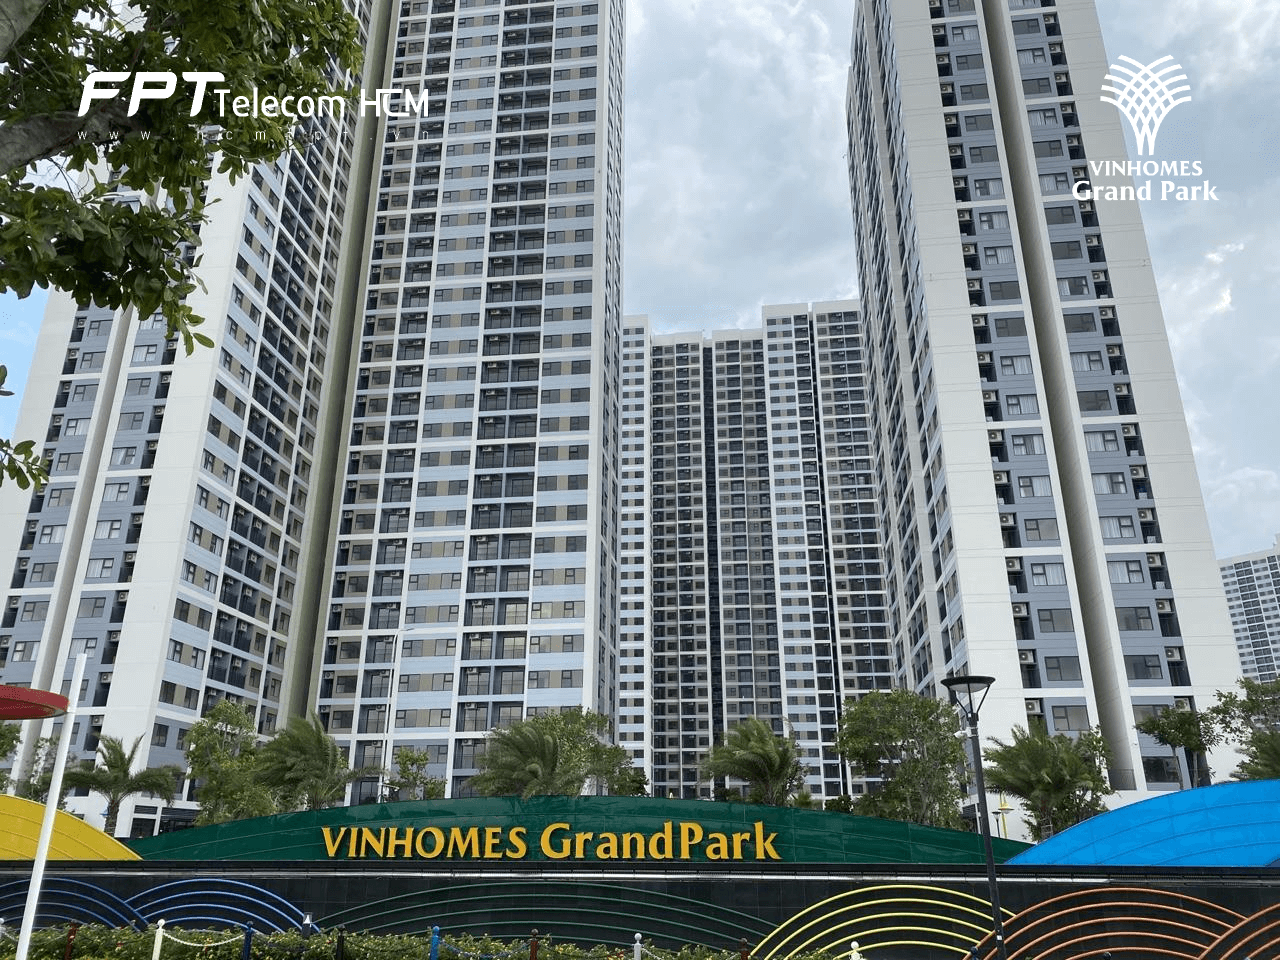 Chỉ từ 300 triệu sở hữu căn hộ Vinhomes Grand Park